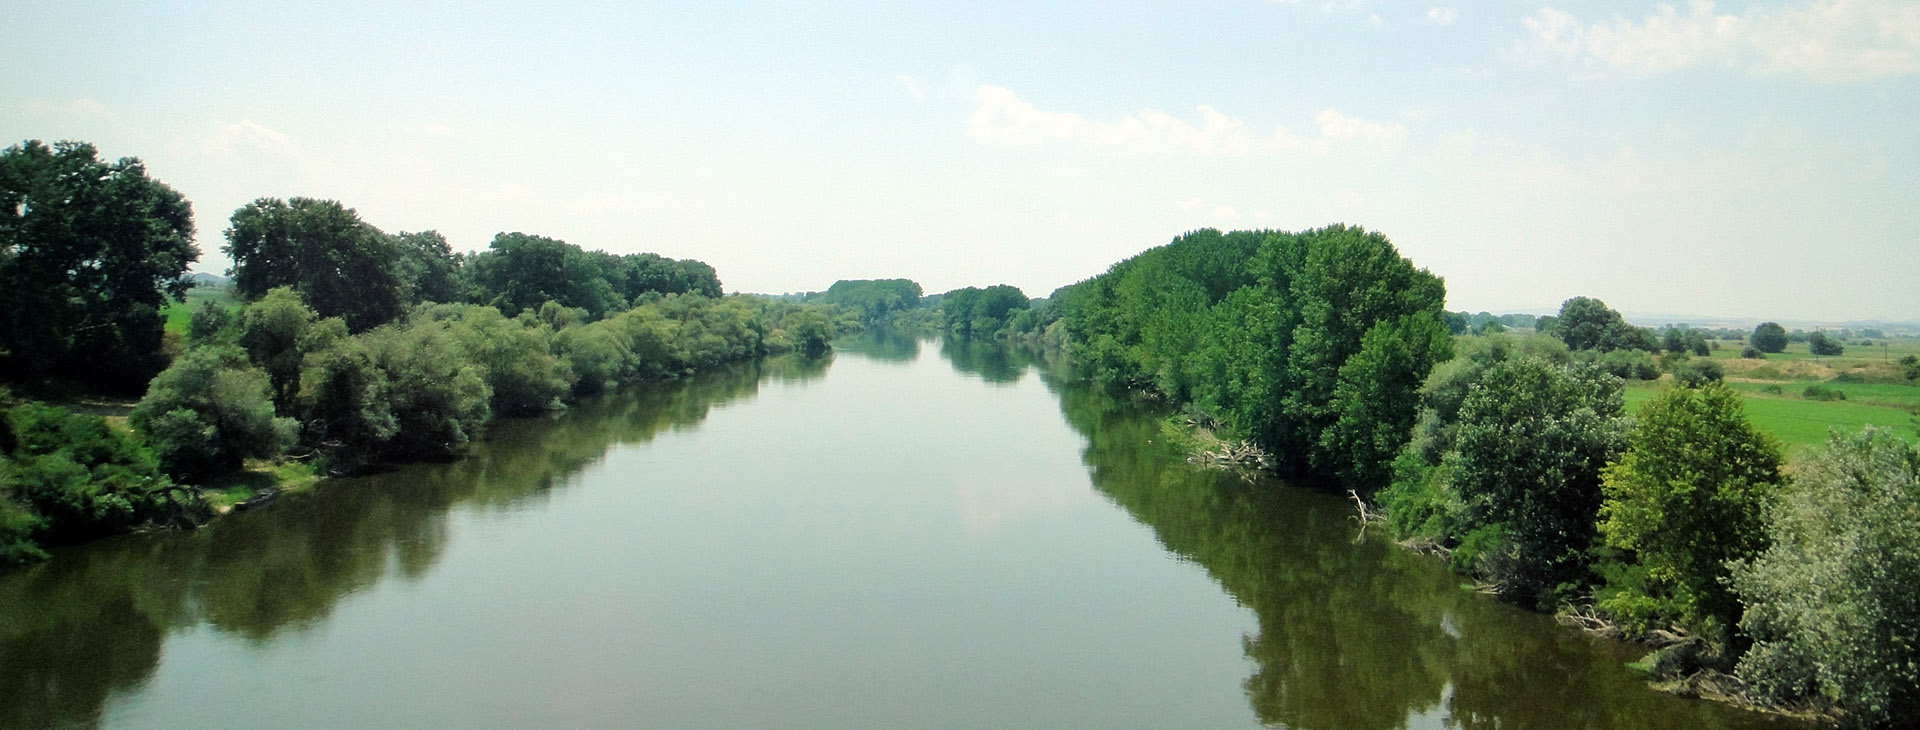 Evros river, Evros